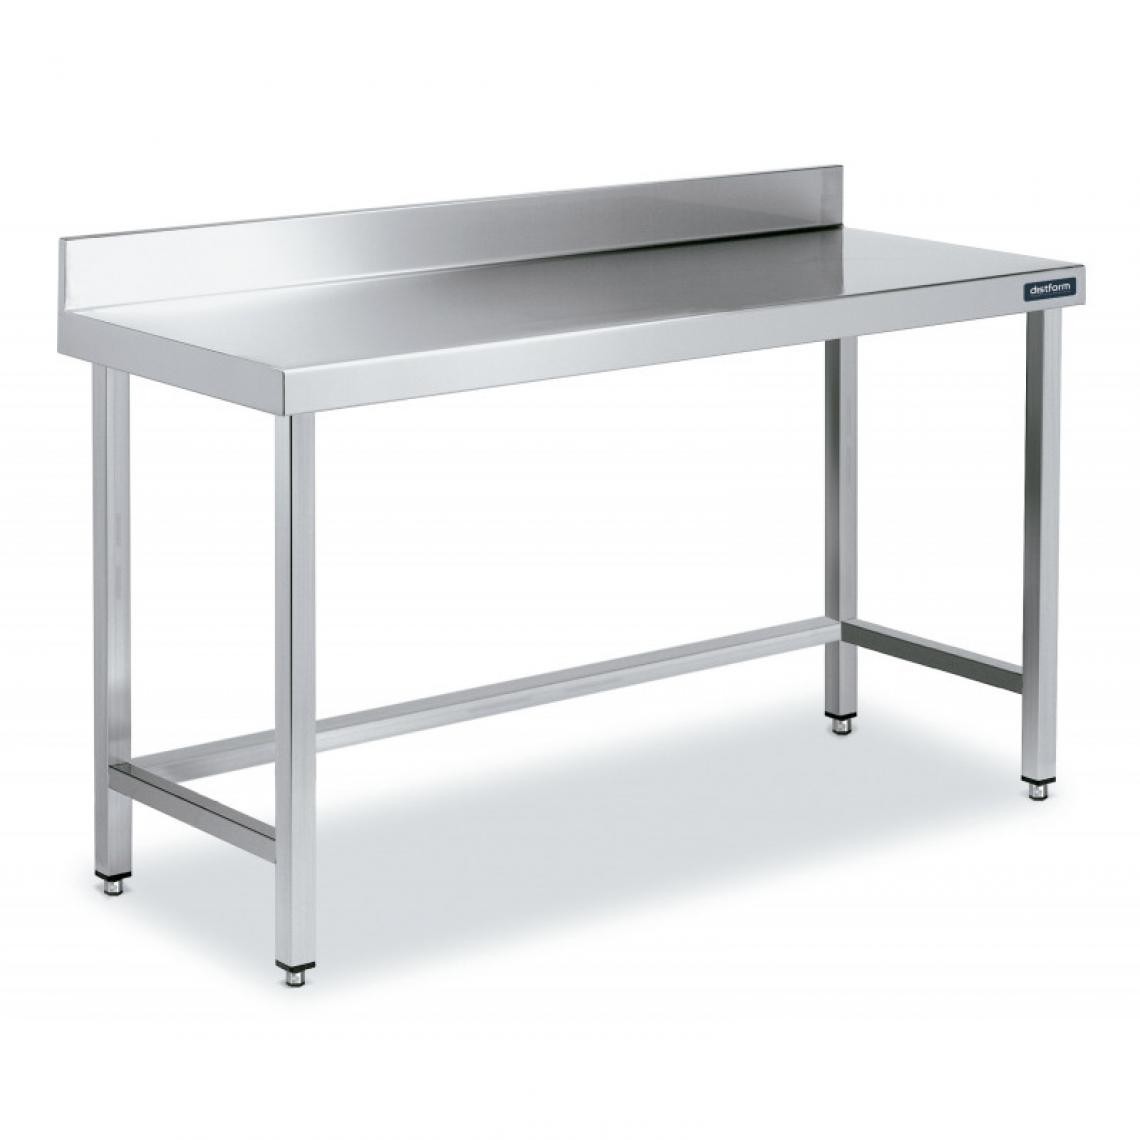 DISTFORM - Table Adossée en Inox avec Renforts Profondeur 550 mm - Distform - Acier inoxydable1600x550 - Tables à manger